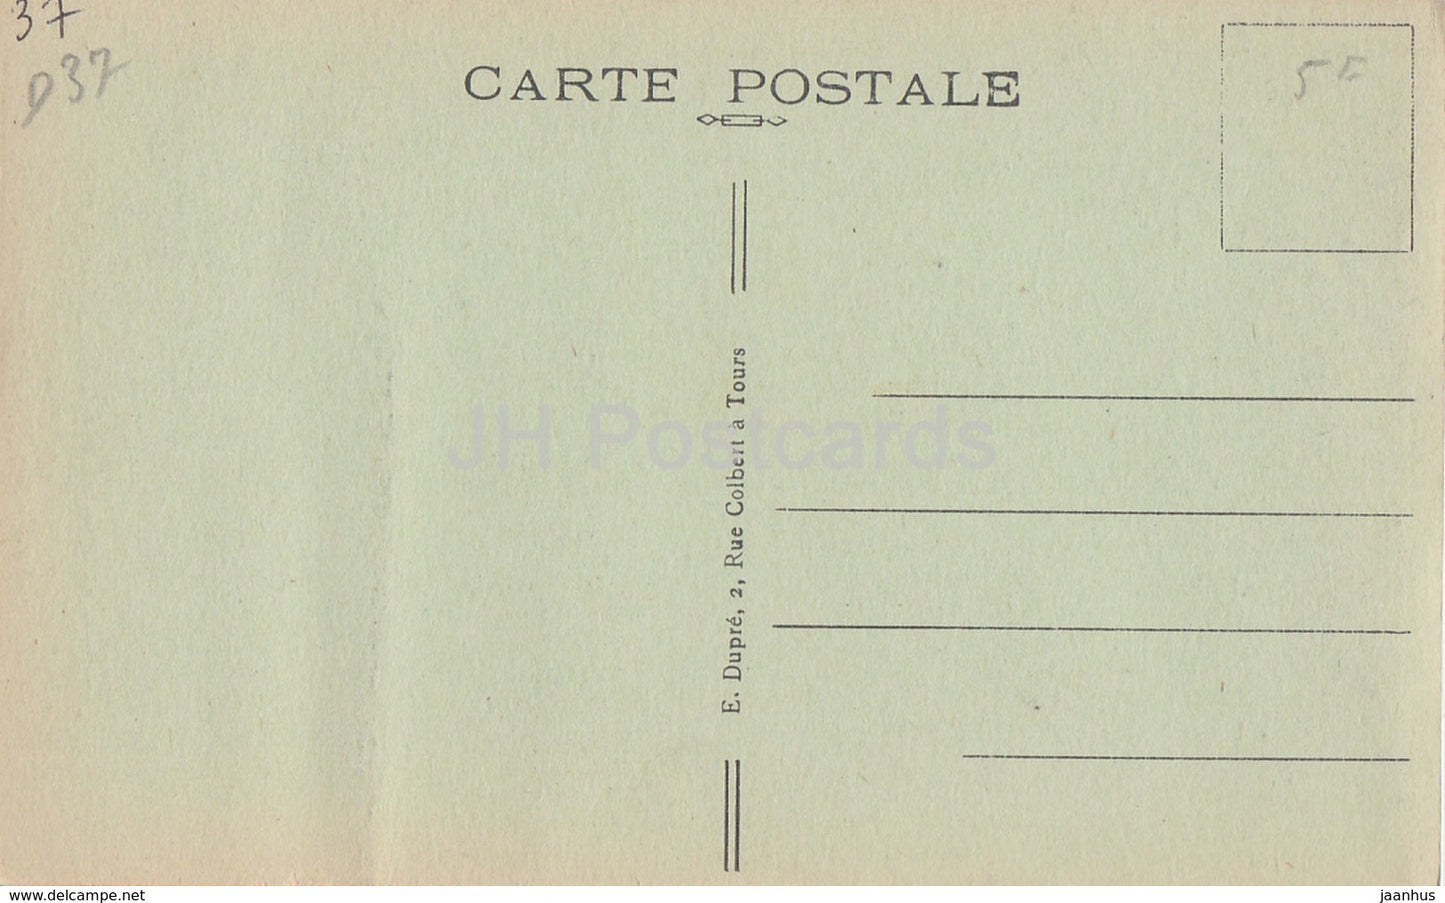 Azay Le Rideau - Le Chateau - Cabinet Portugais - castle - 12 - old postcard - France - unused